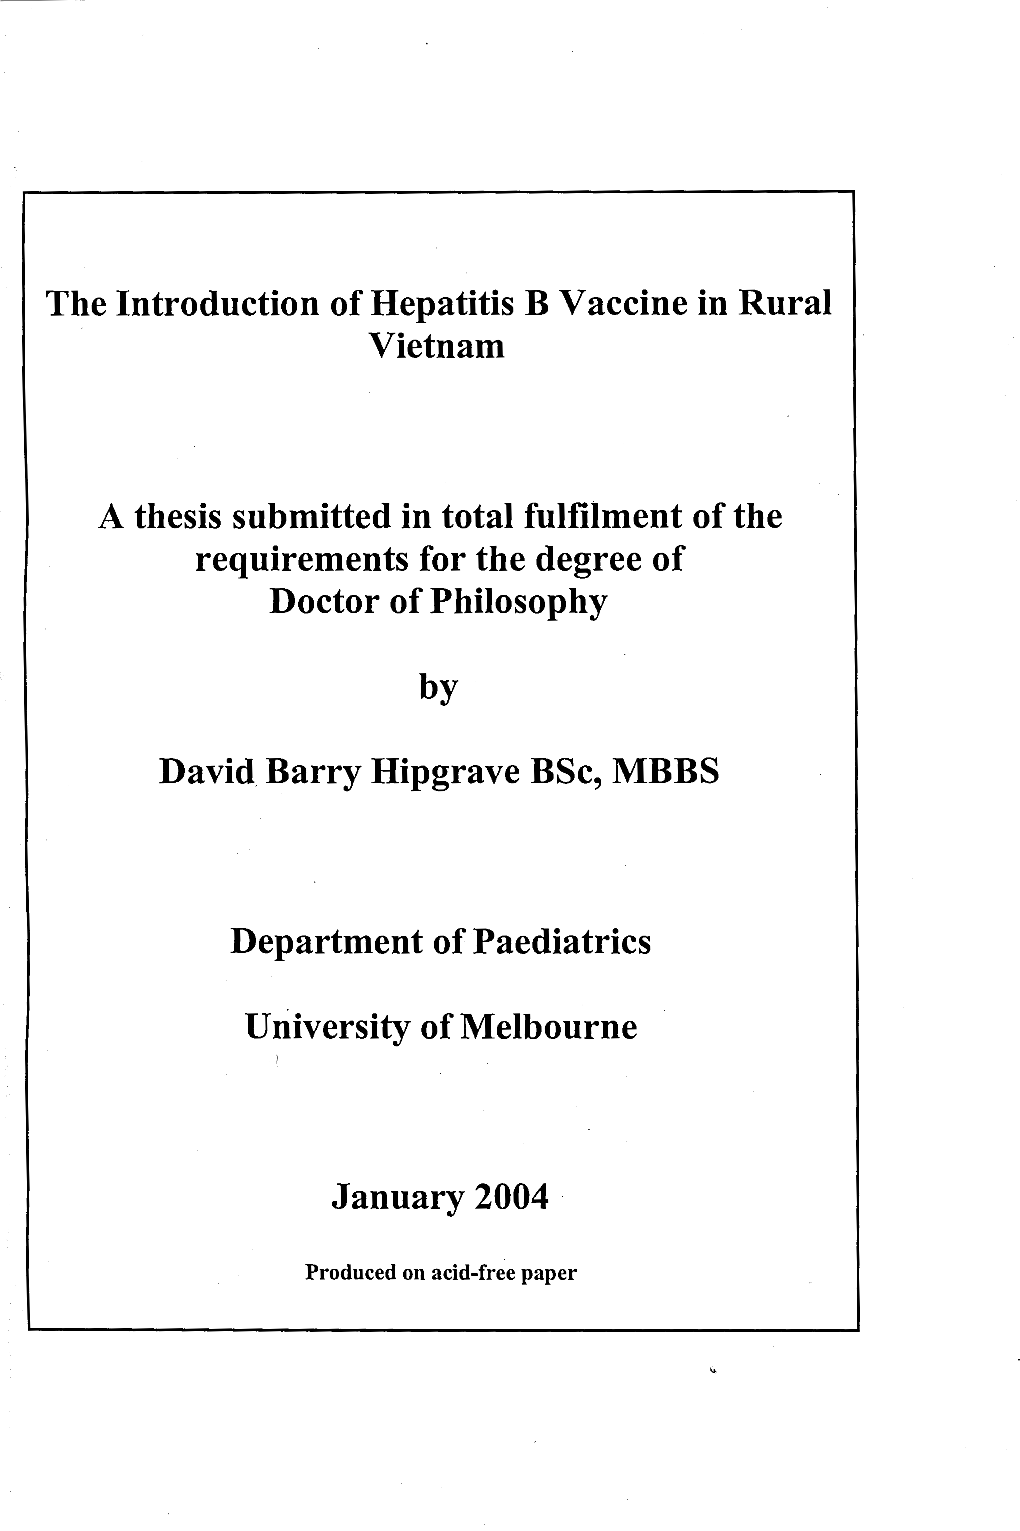 The Introduction of Hepatitis B Vaccine in Rural Vietnam